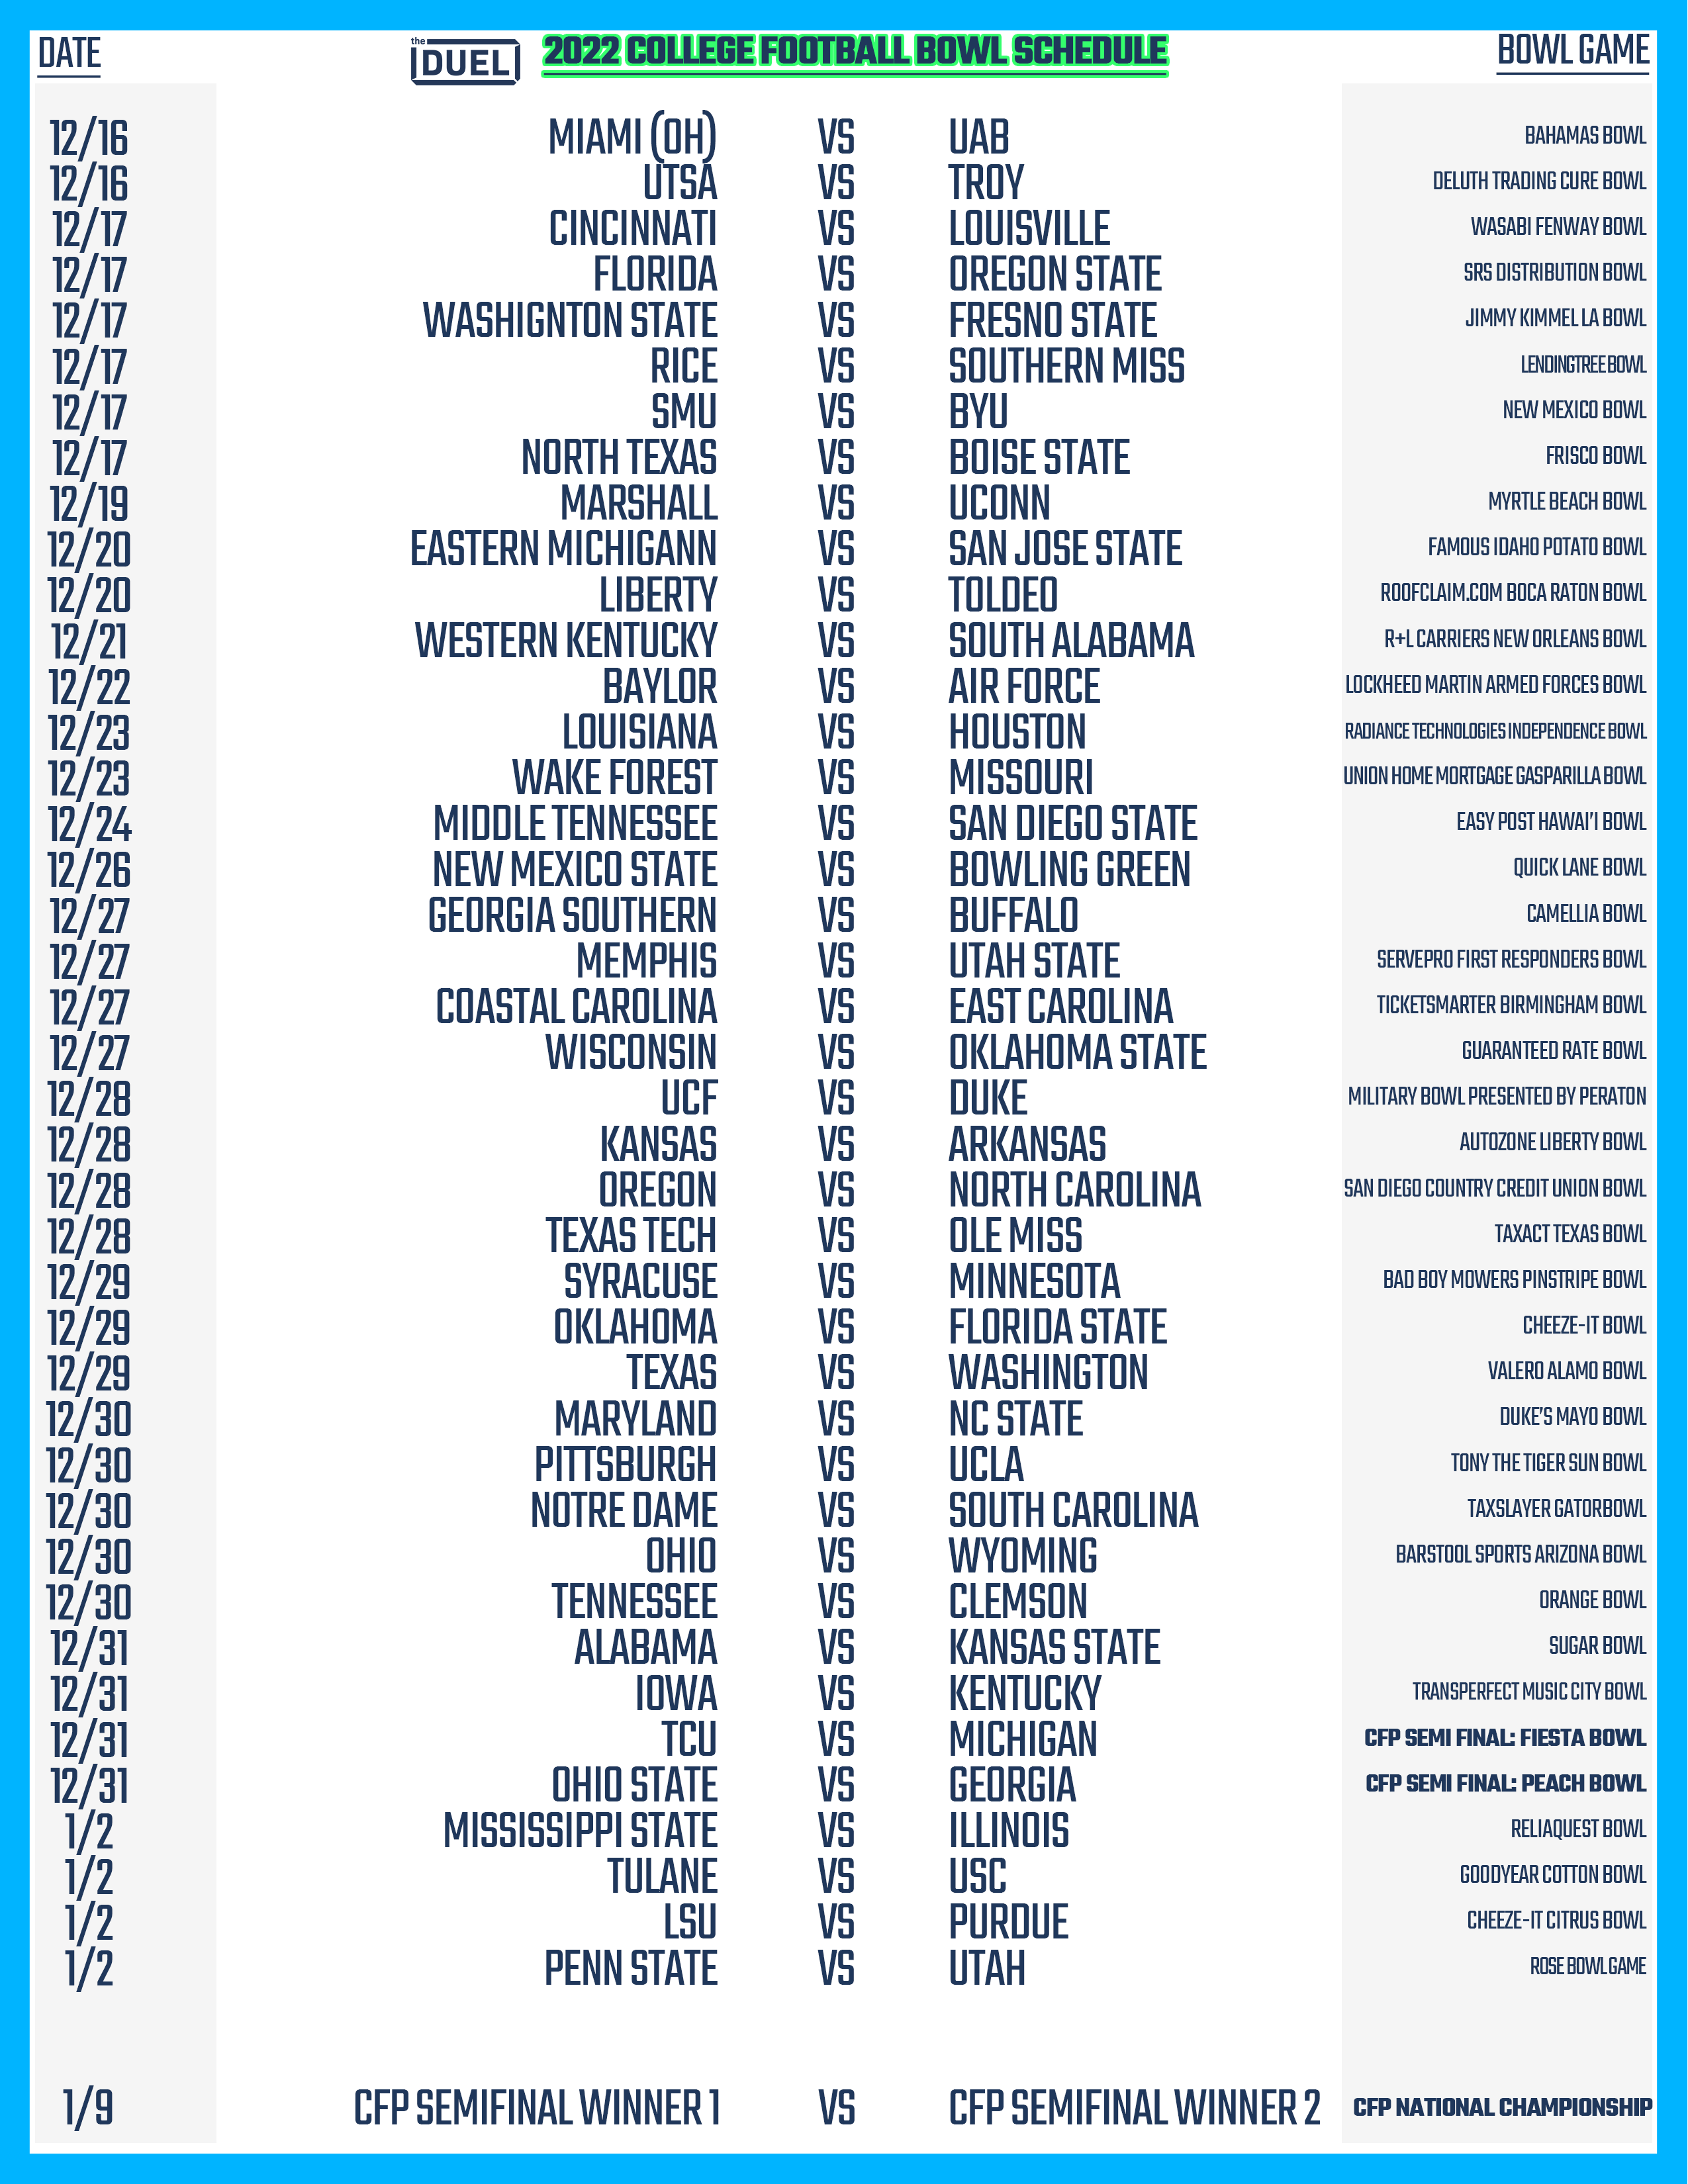 Printable Week 5 NFL Schedule Pick Em Sheets  Nfl week, Printable nfl  schedule, Nfl calendar